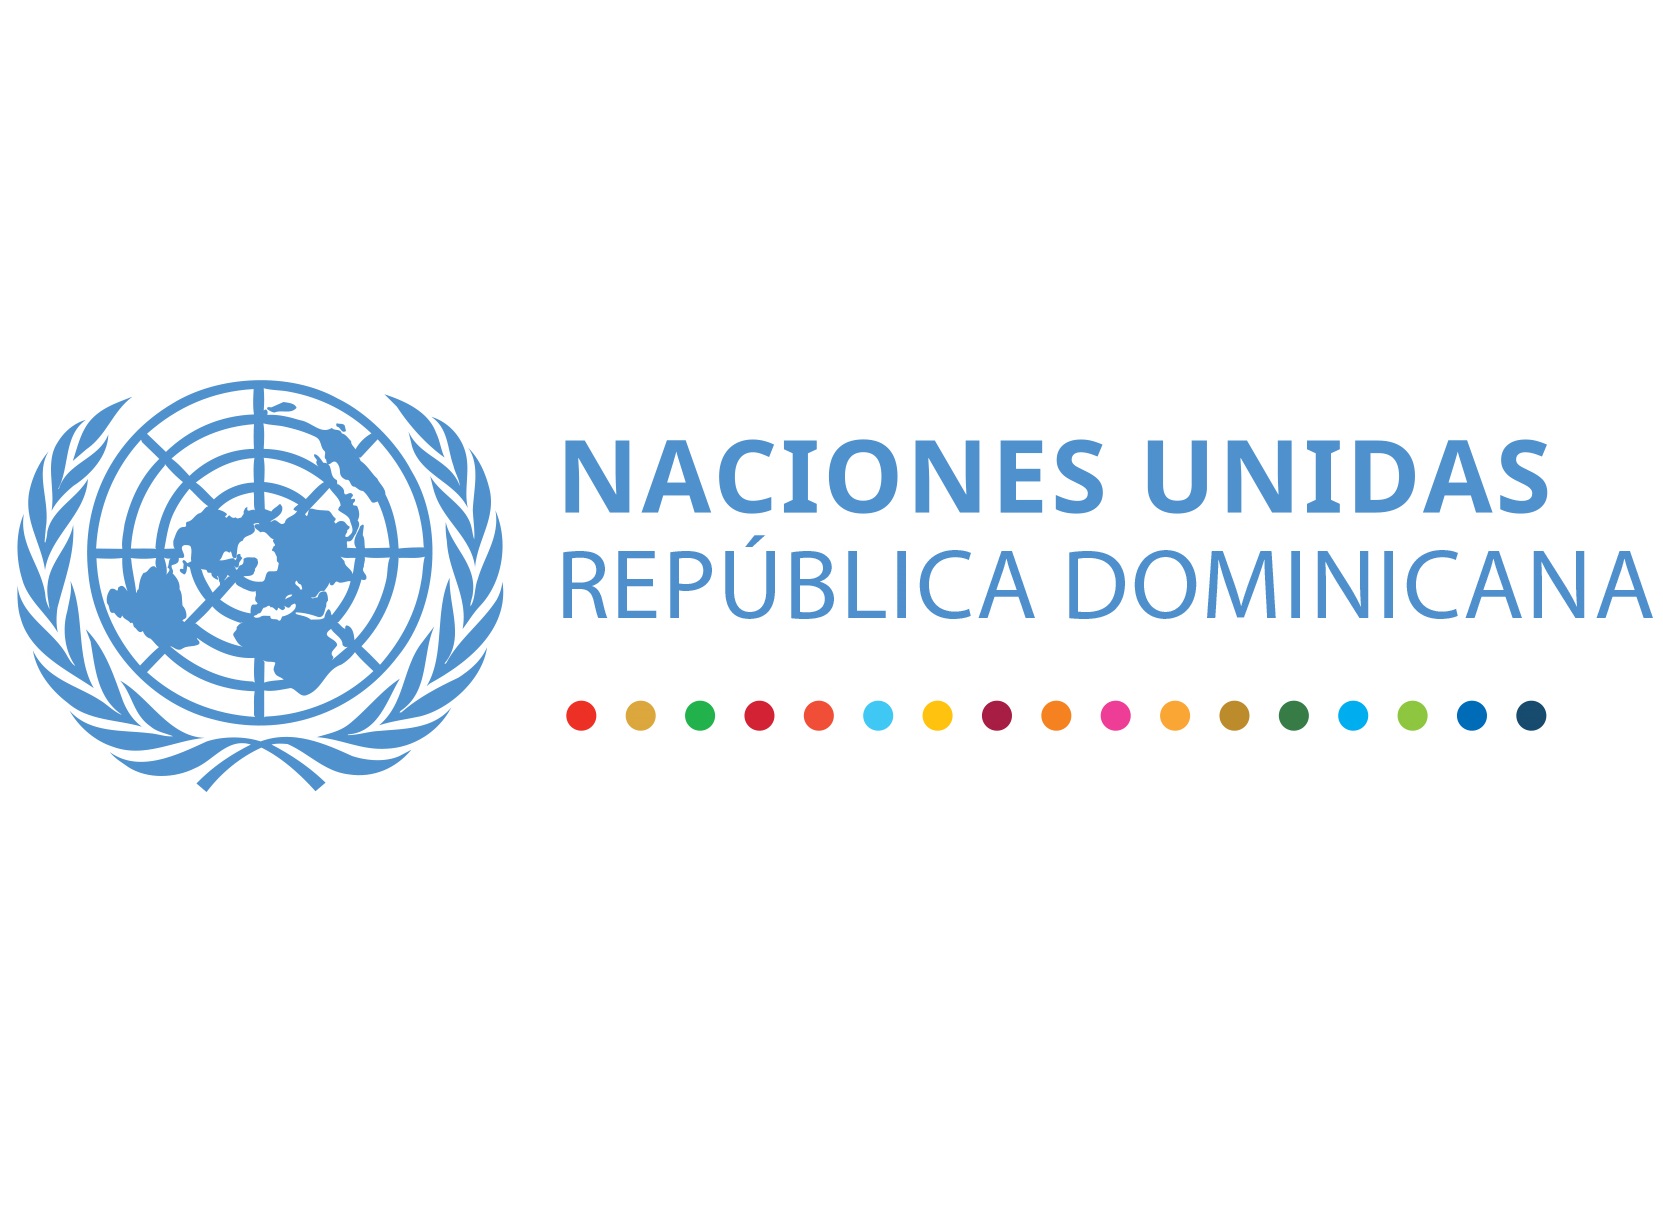 Naciones Unidas en República Dominicana expresa su profunda preocupación ante la persistente violencia contra la niñez